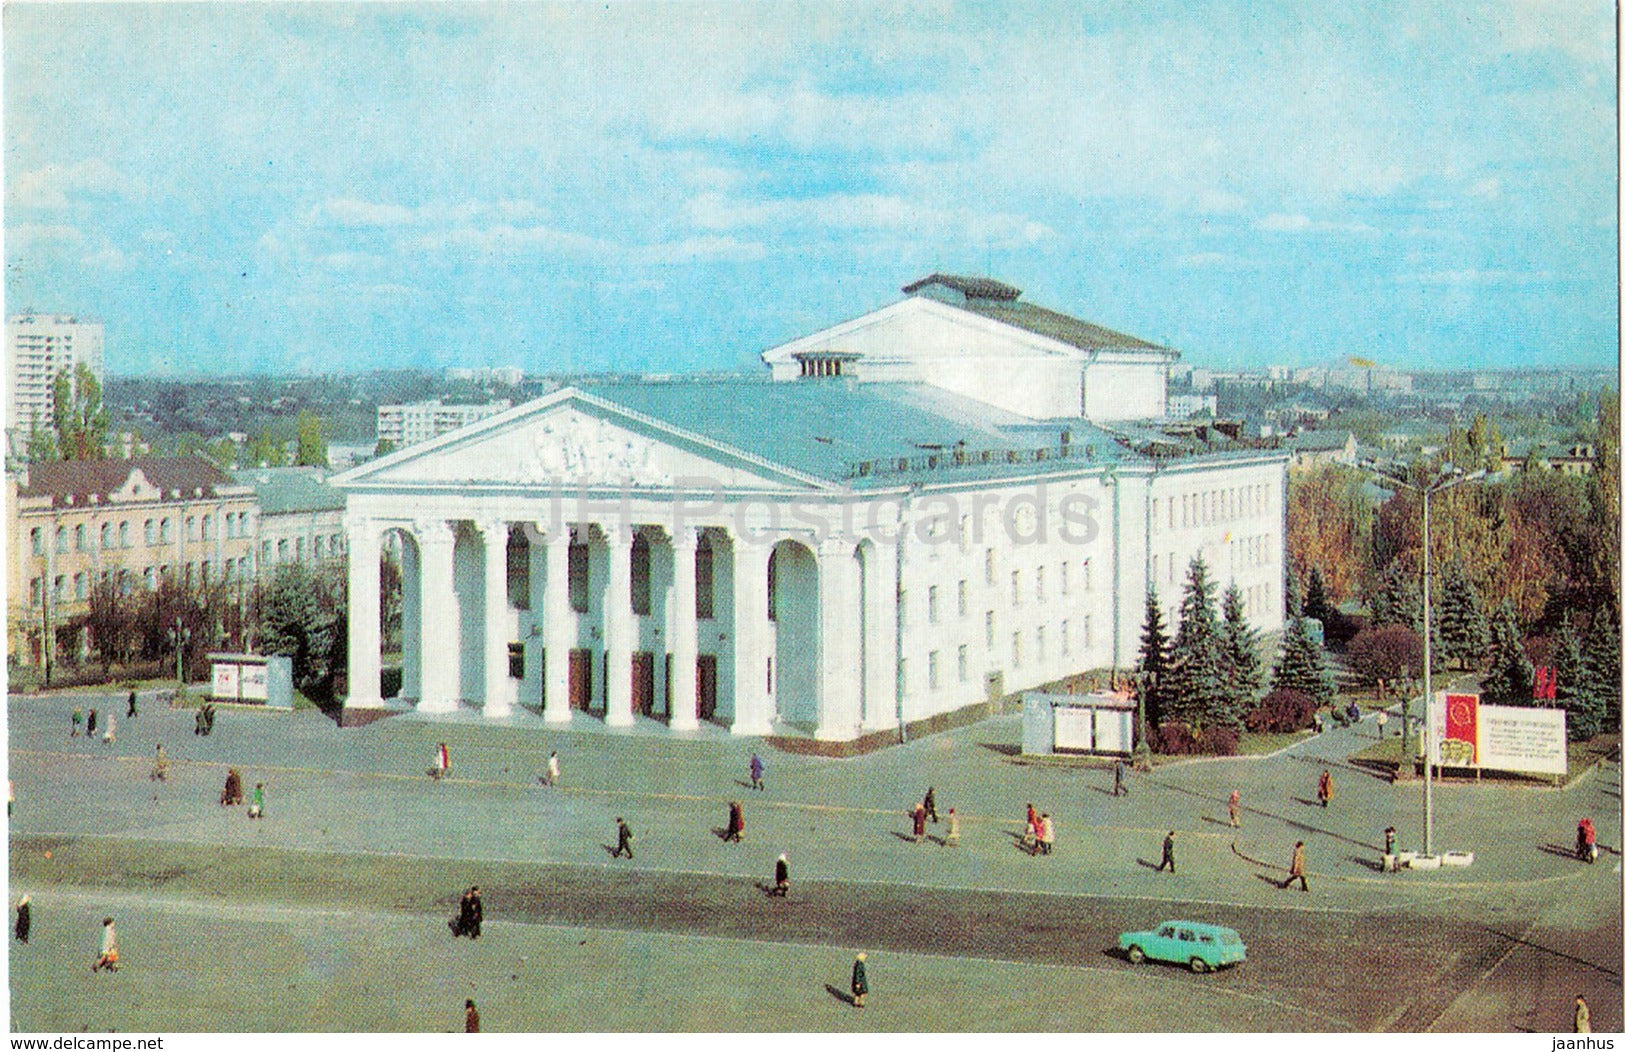 Chernihiv - Chernigiv - Shevchenko Musical and Drama theatre - 1980 - Ukraine - unused - JH Postcards